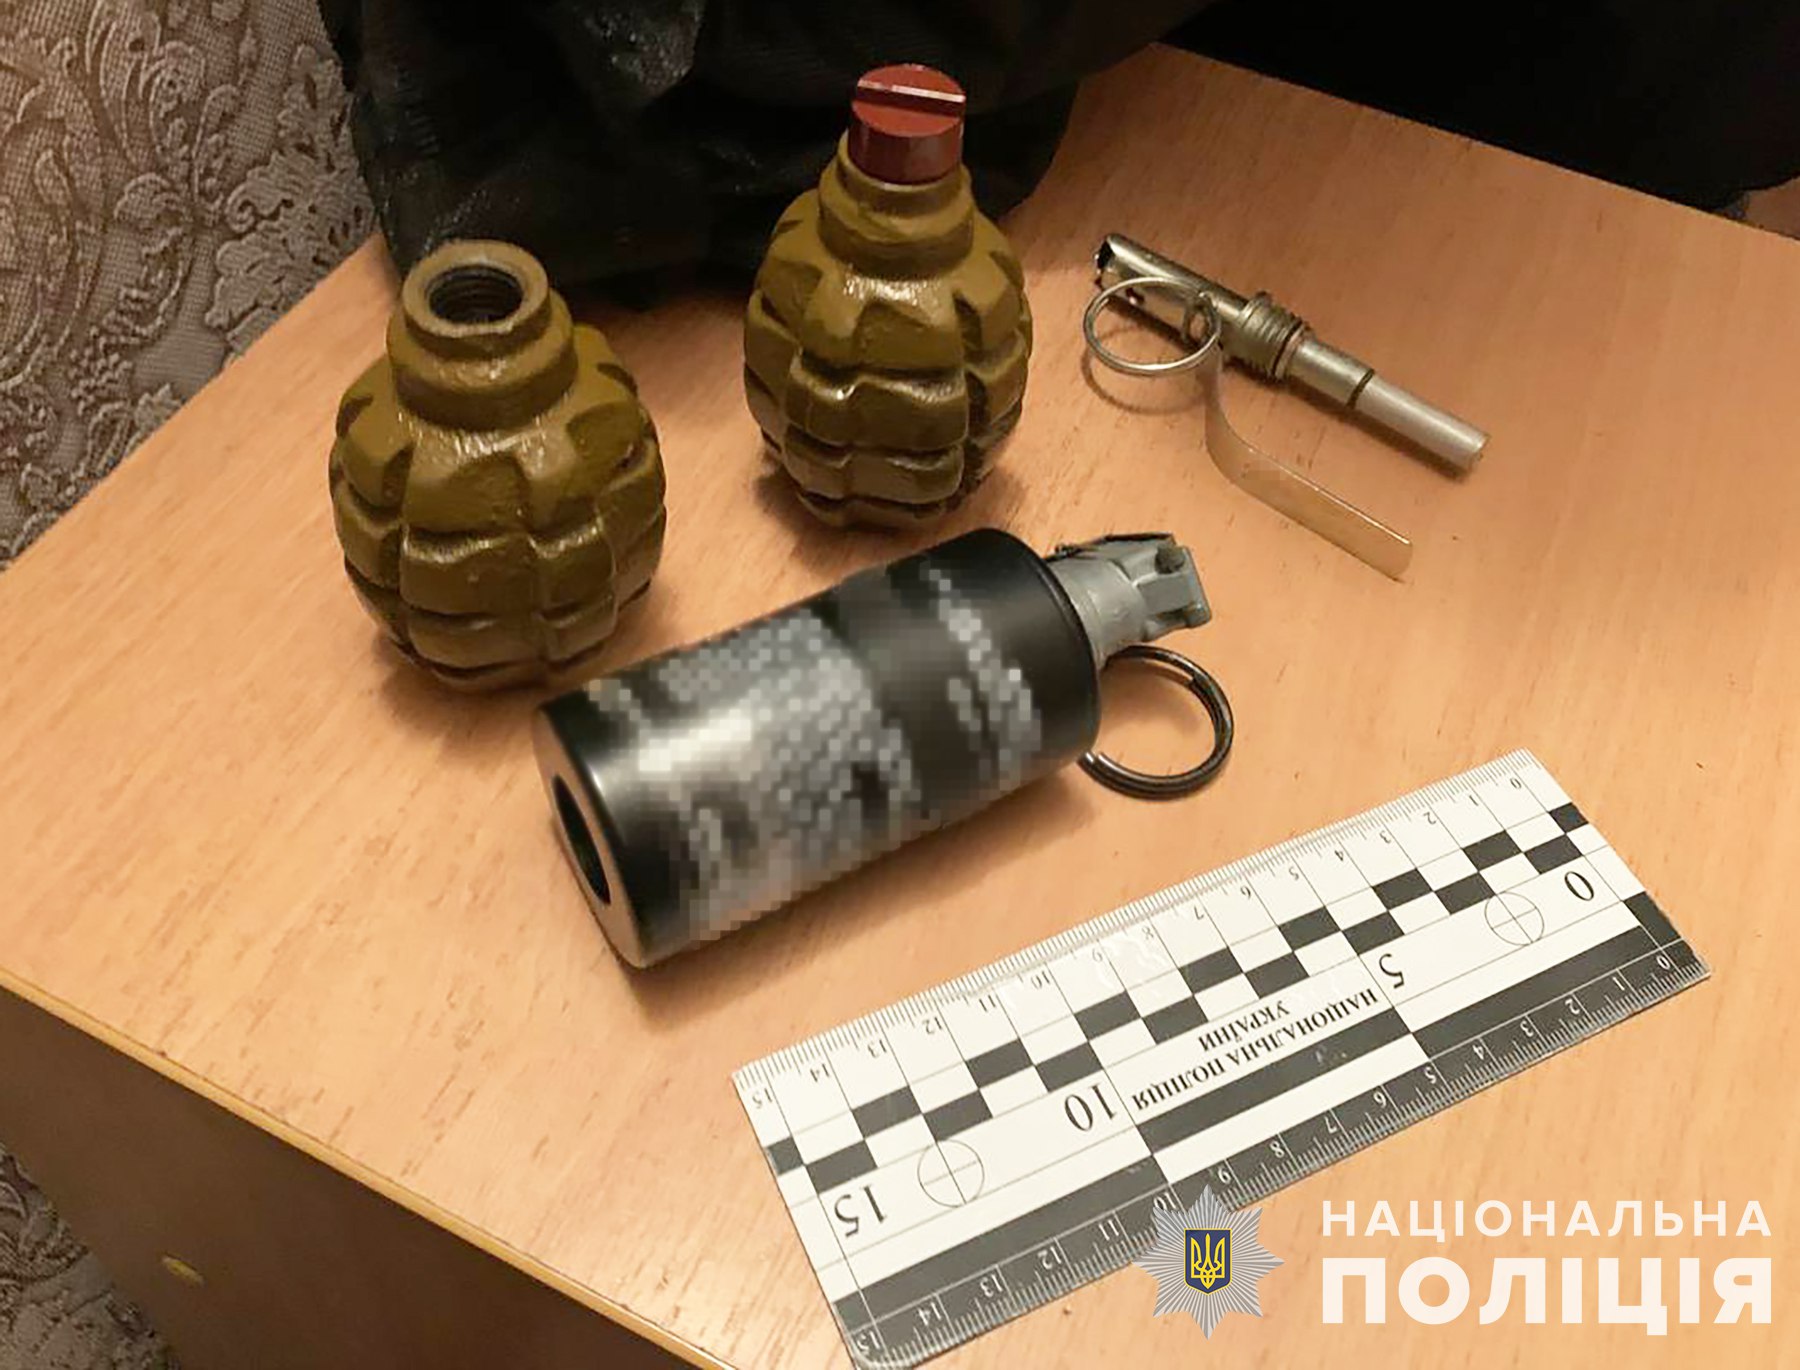 Полицейские задержали в Запорожье мужчину, который угрожал родным гранатой